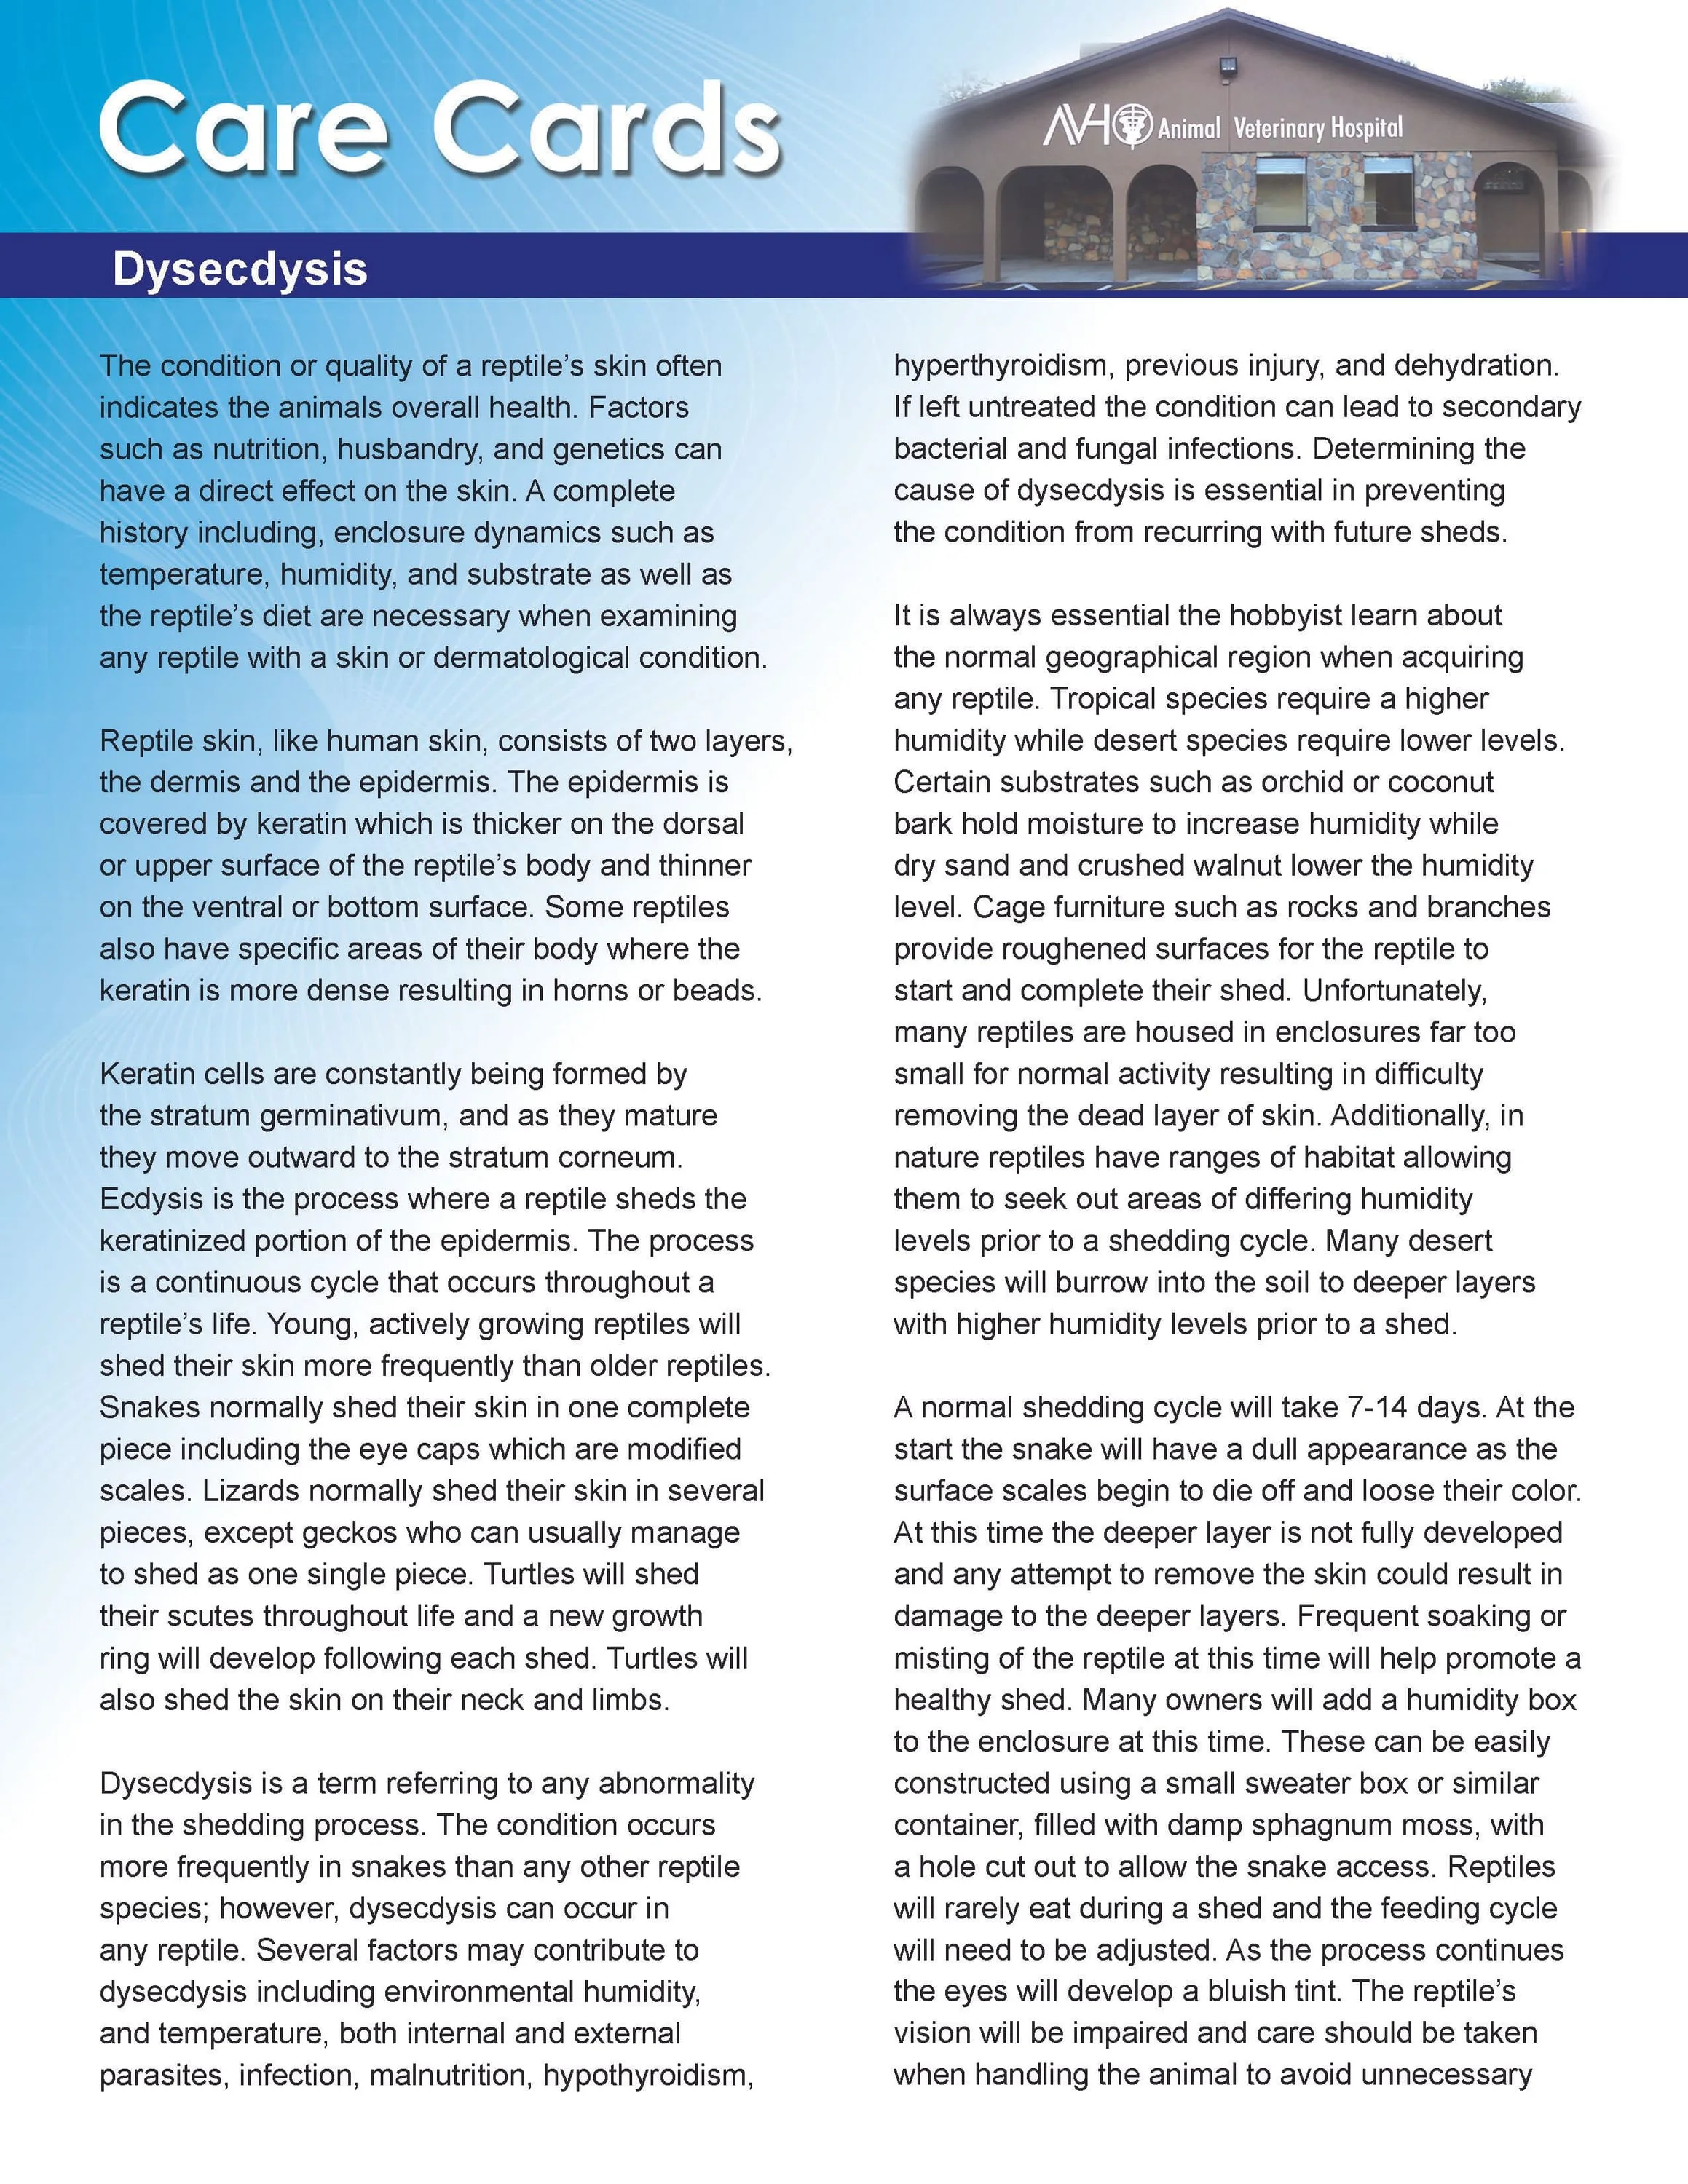 Dysecdysis Care Card